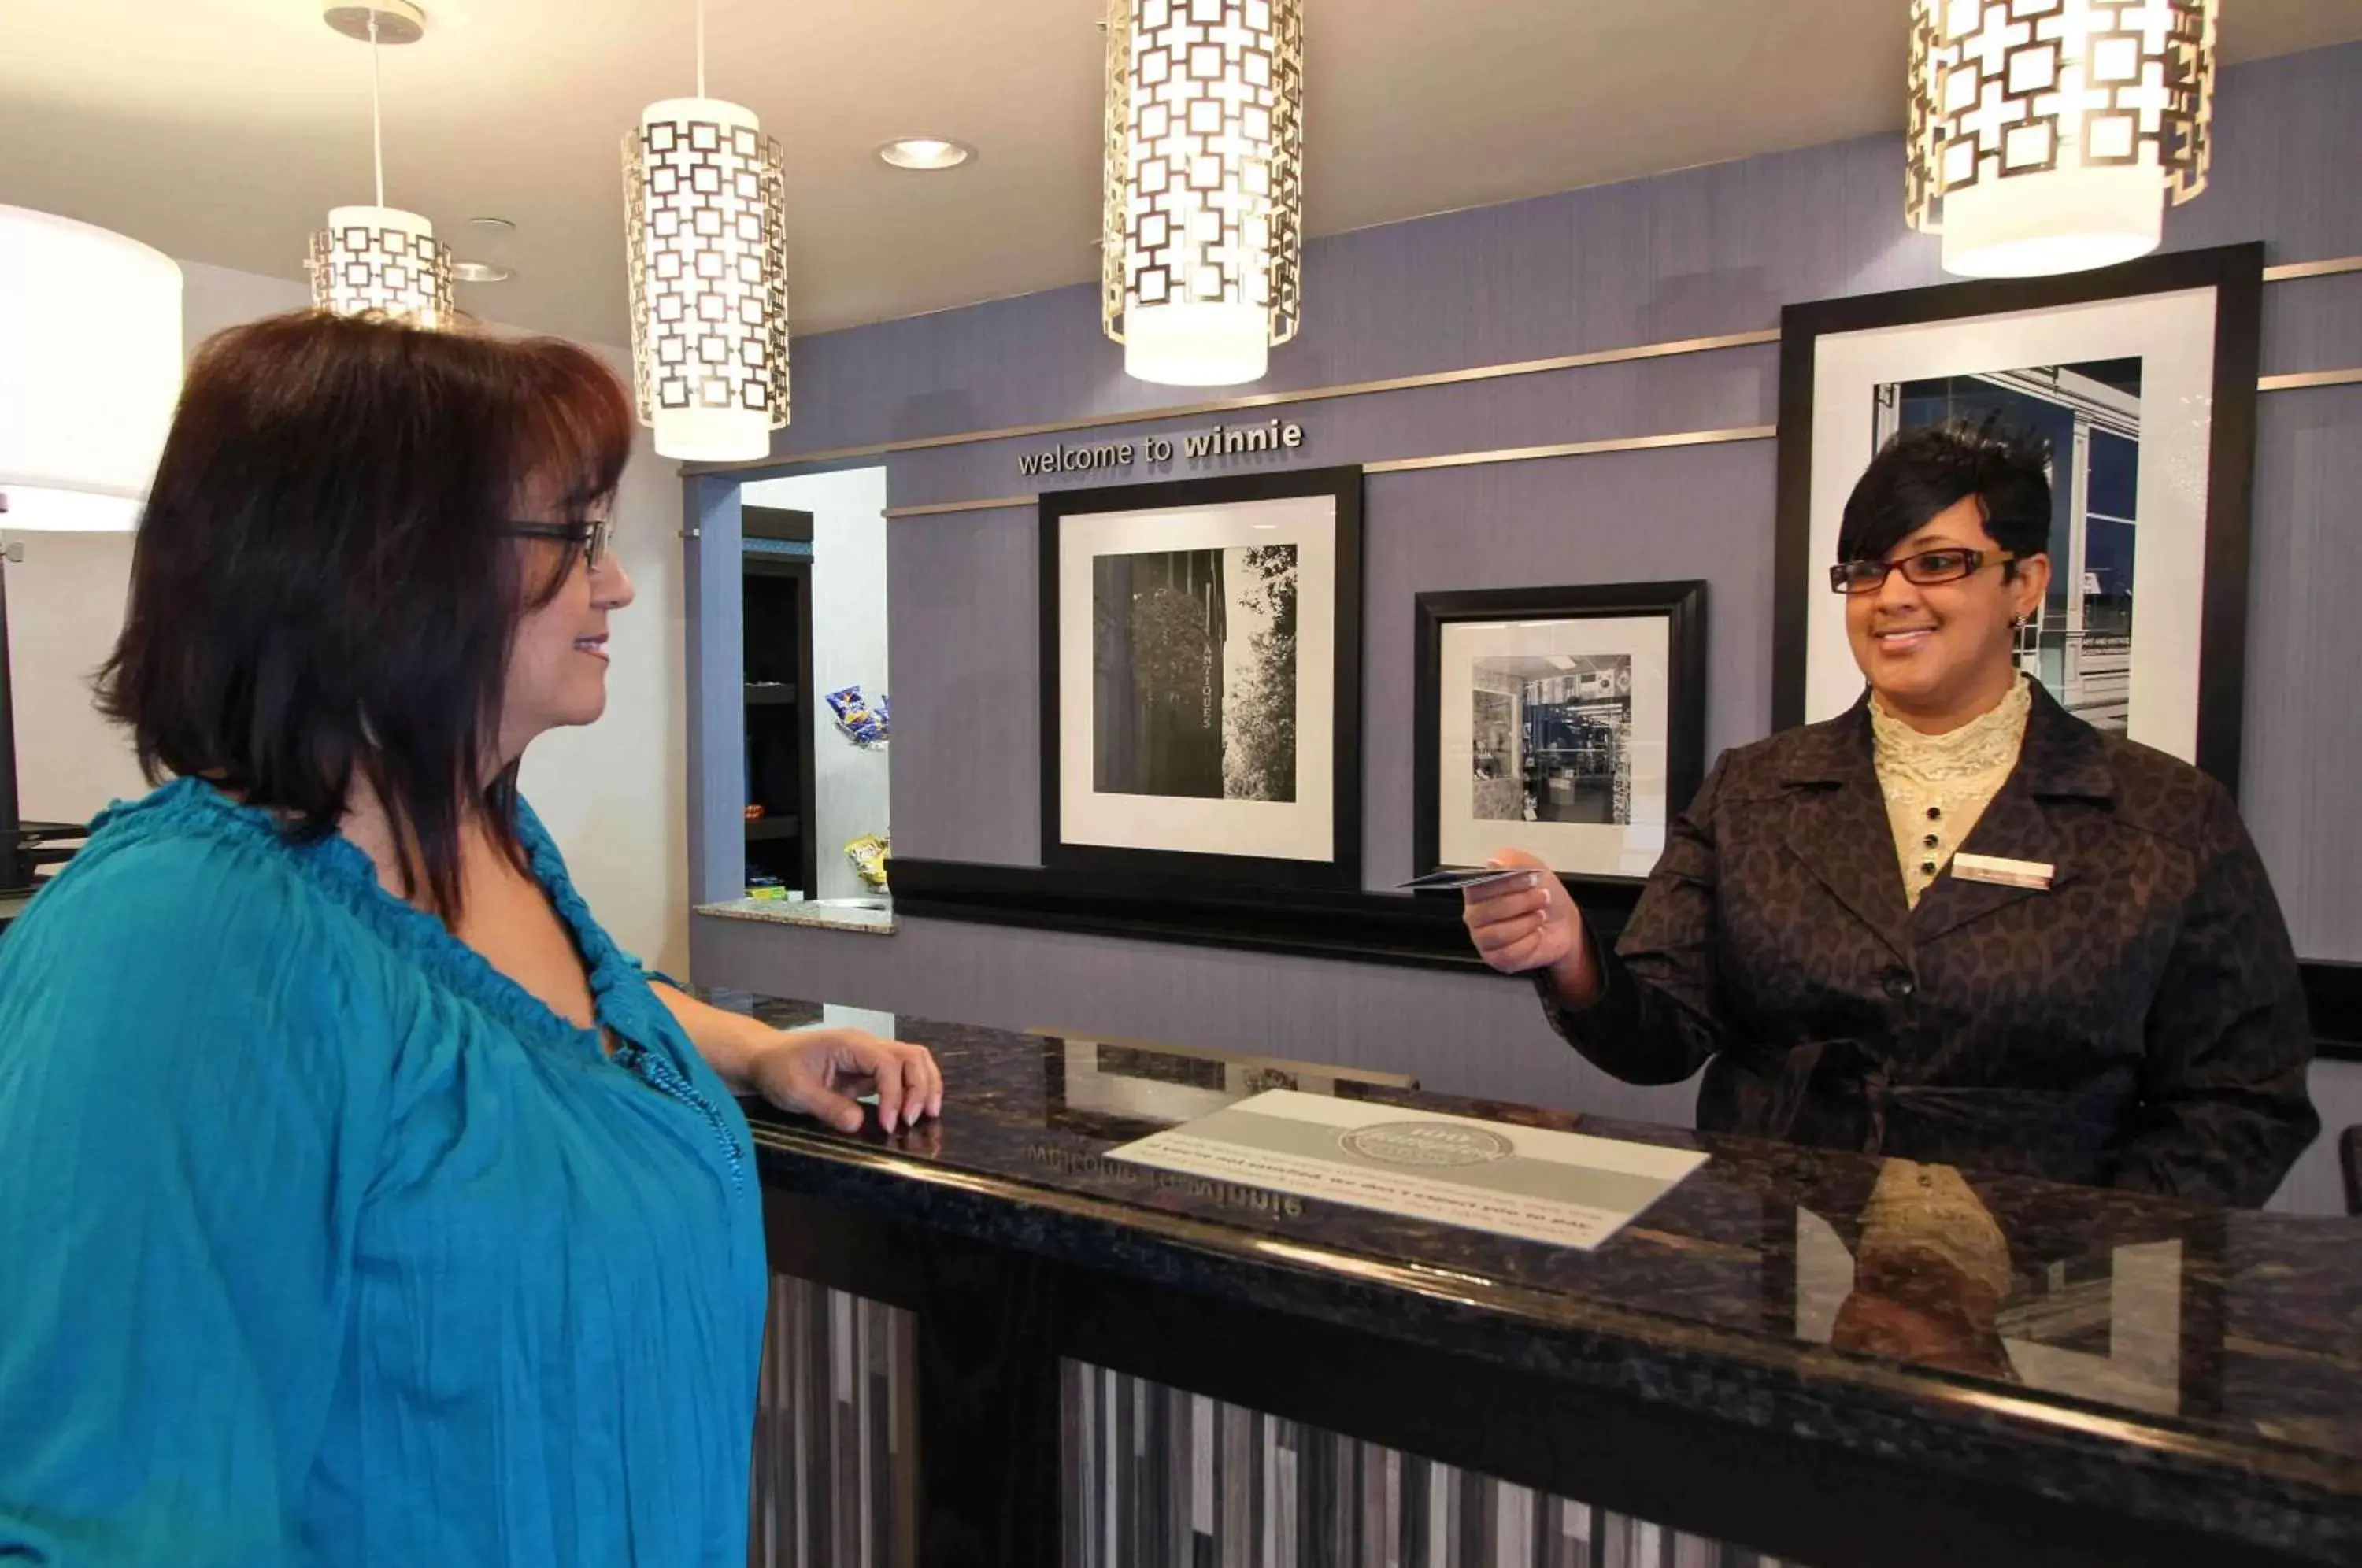 Lobby or reception, Lobby/Reception in Hampton Inn & Suites Winnie